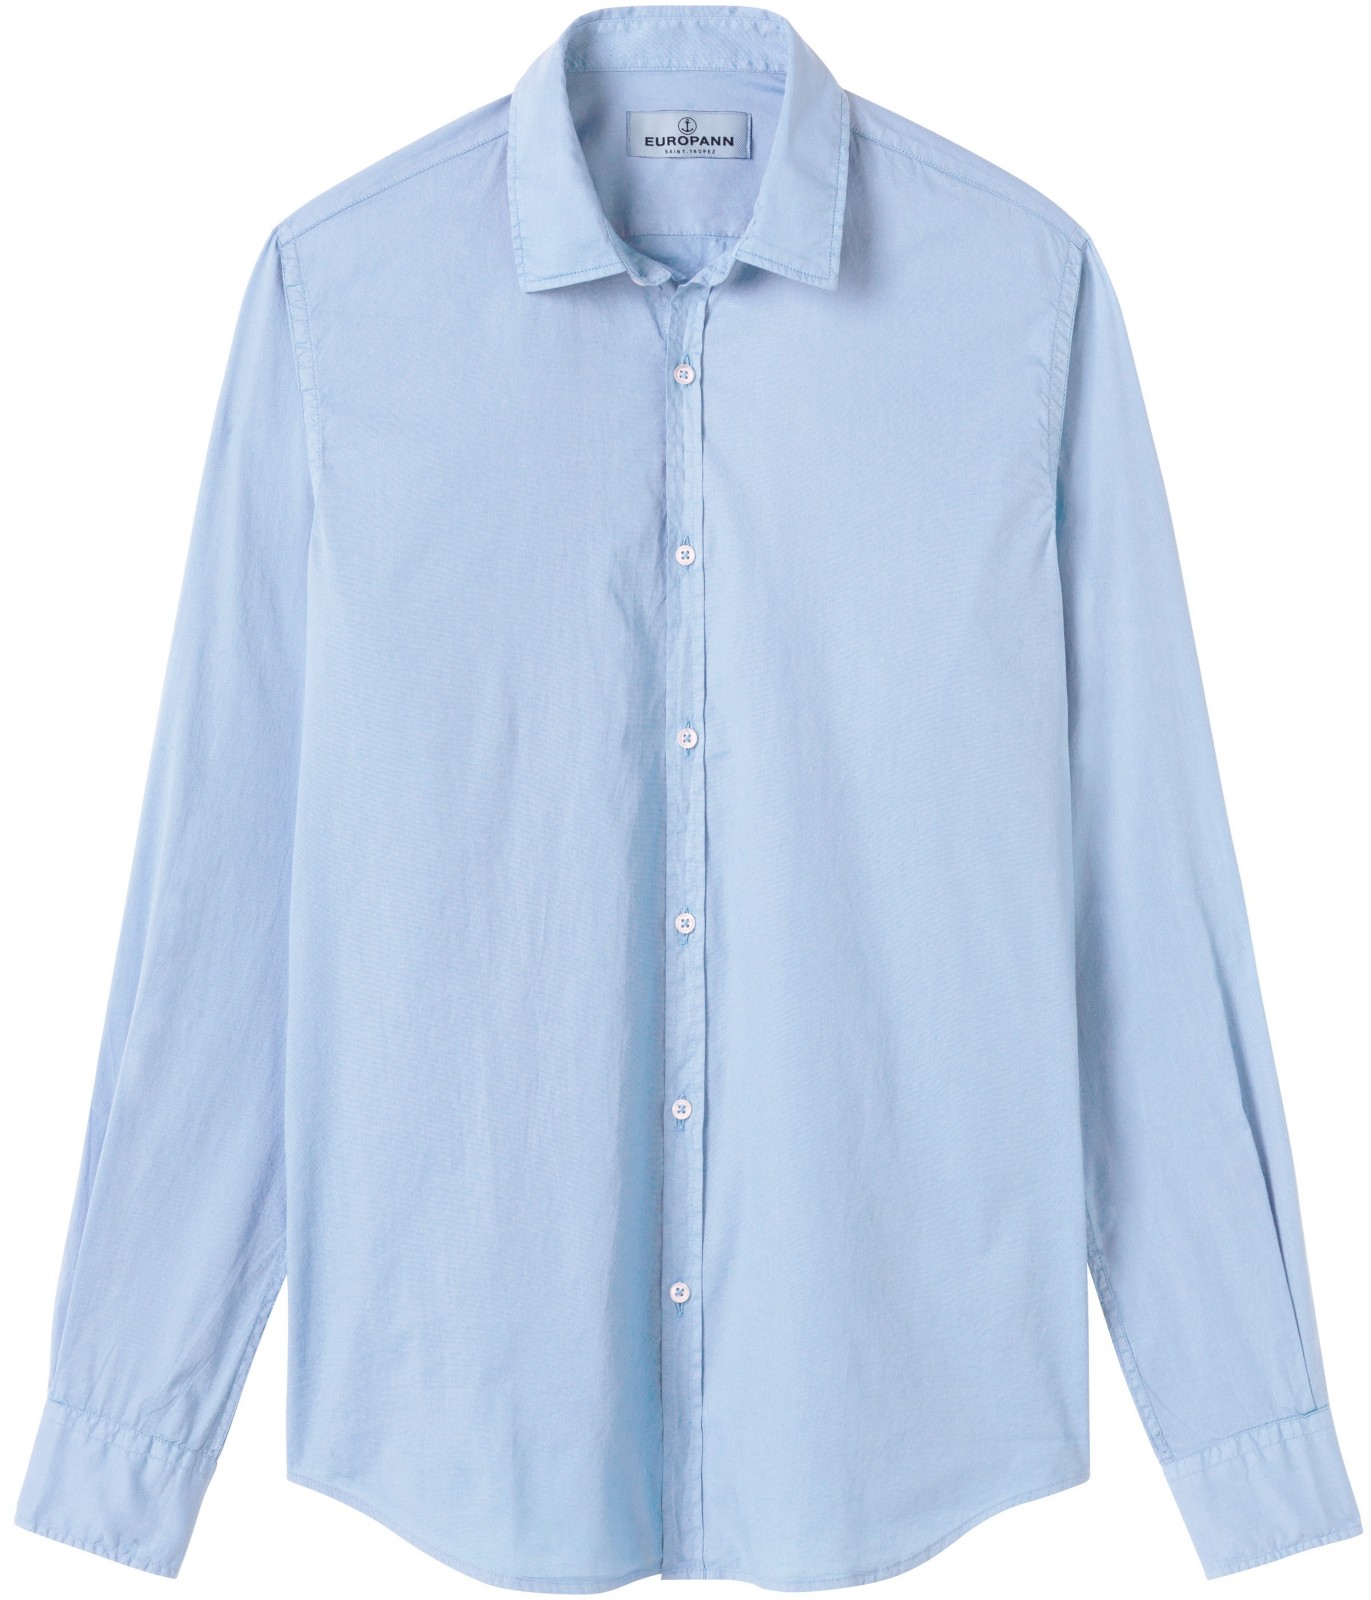 Plain sky blue color long sleeves shirt for men | Quality brand Europann